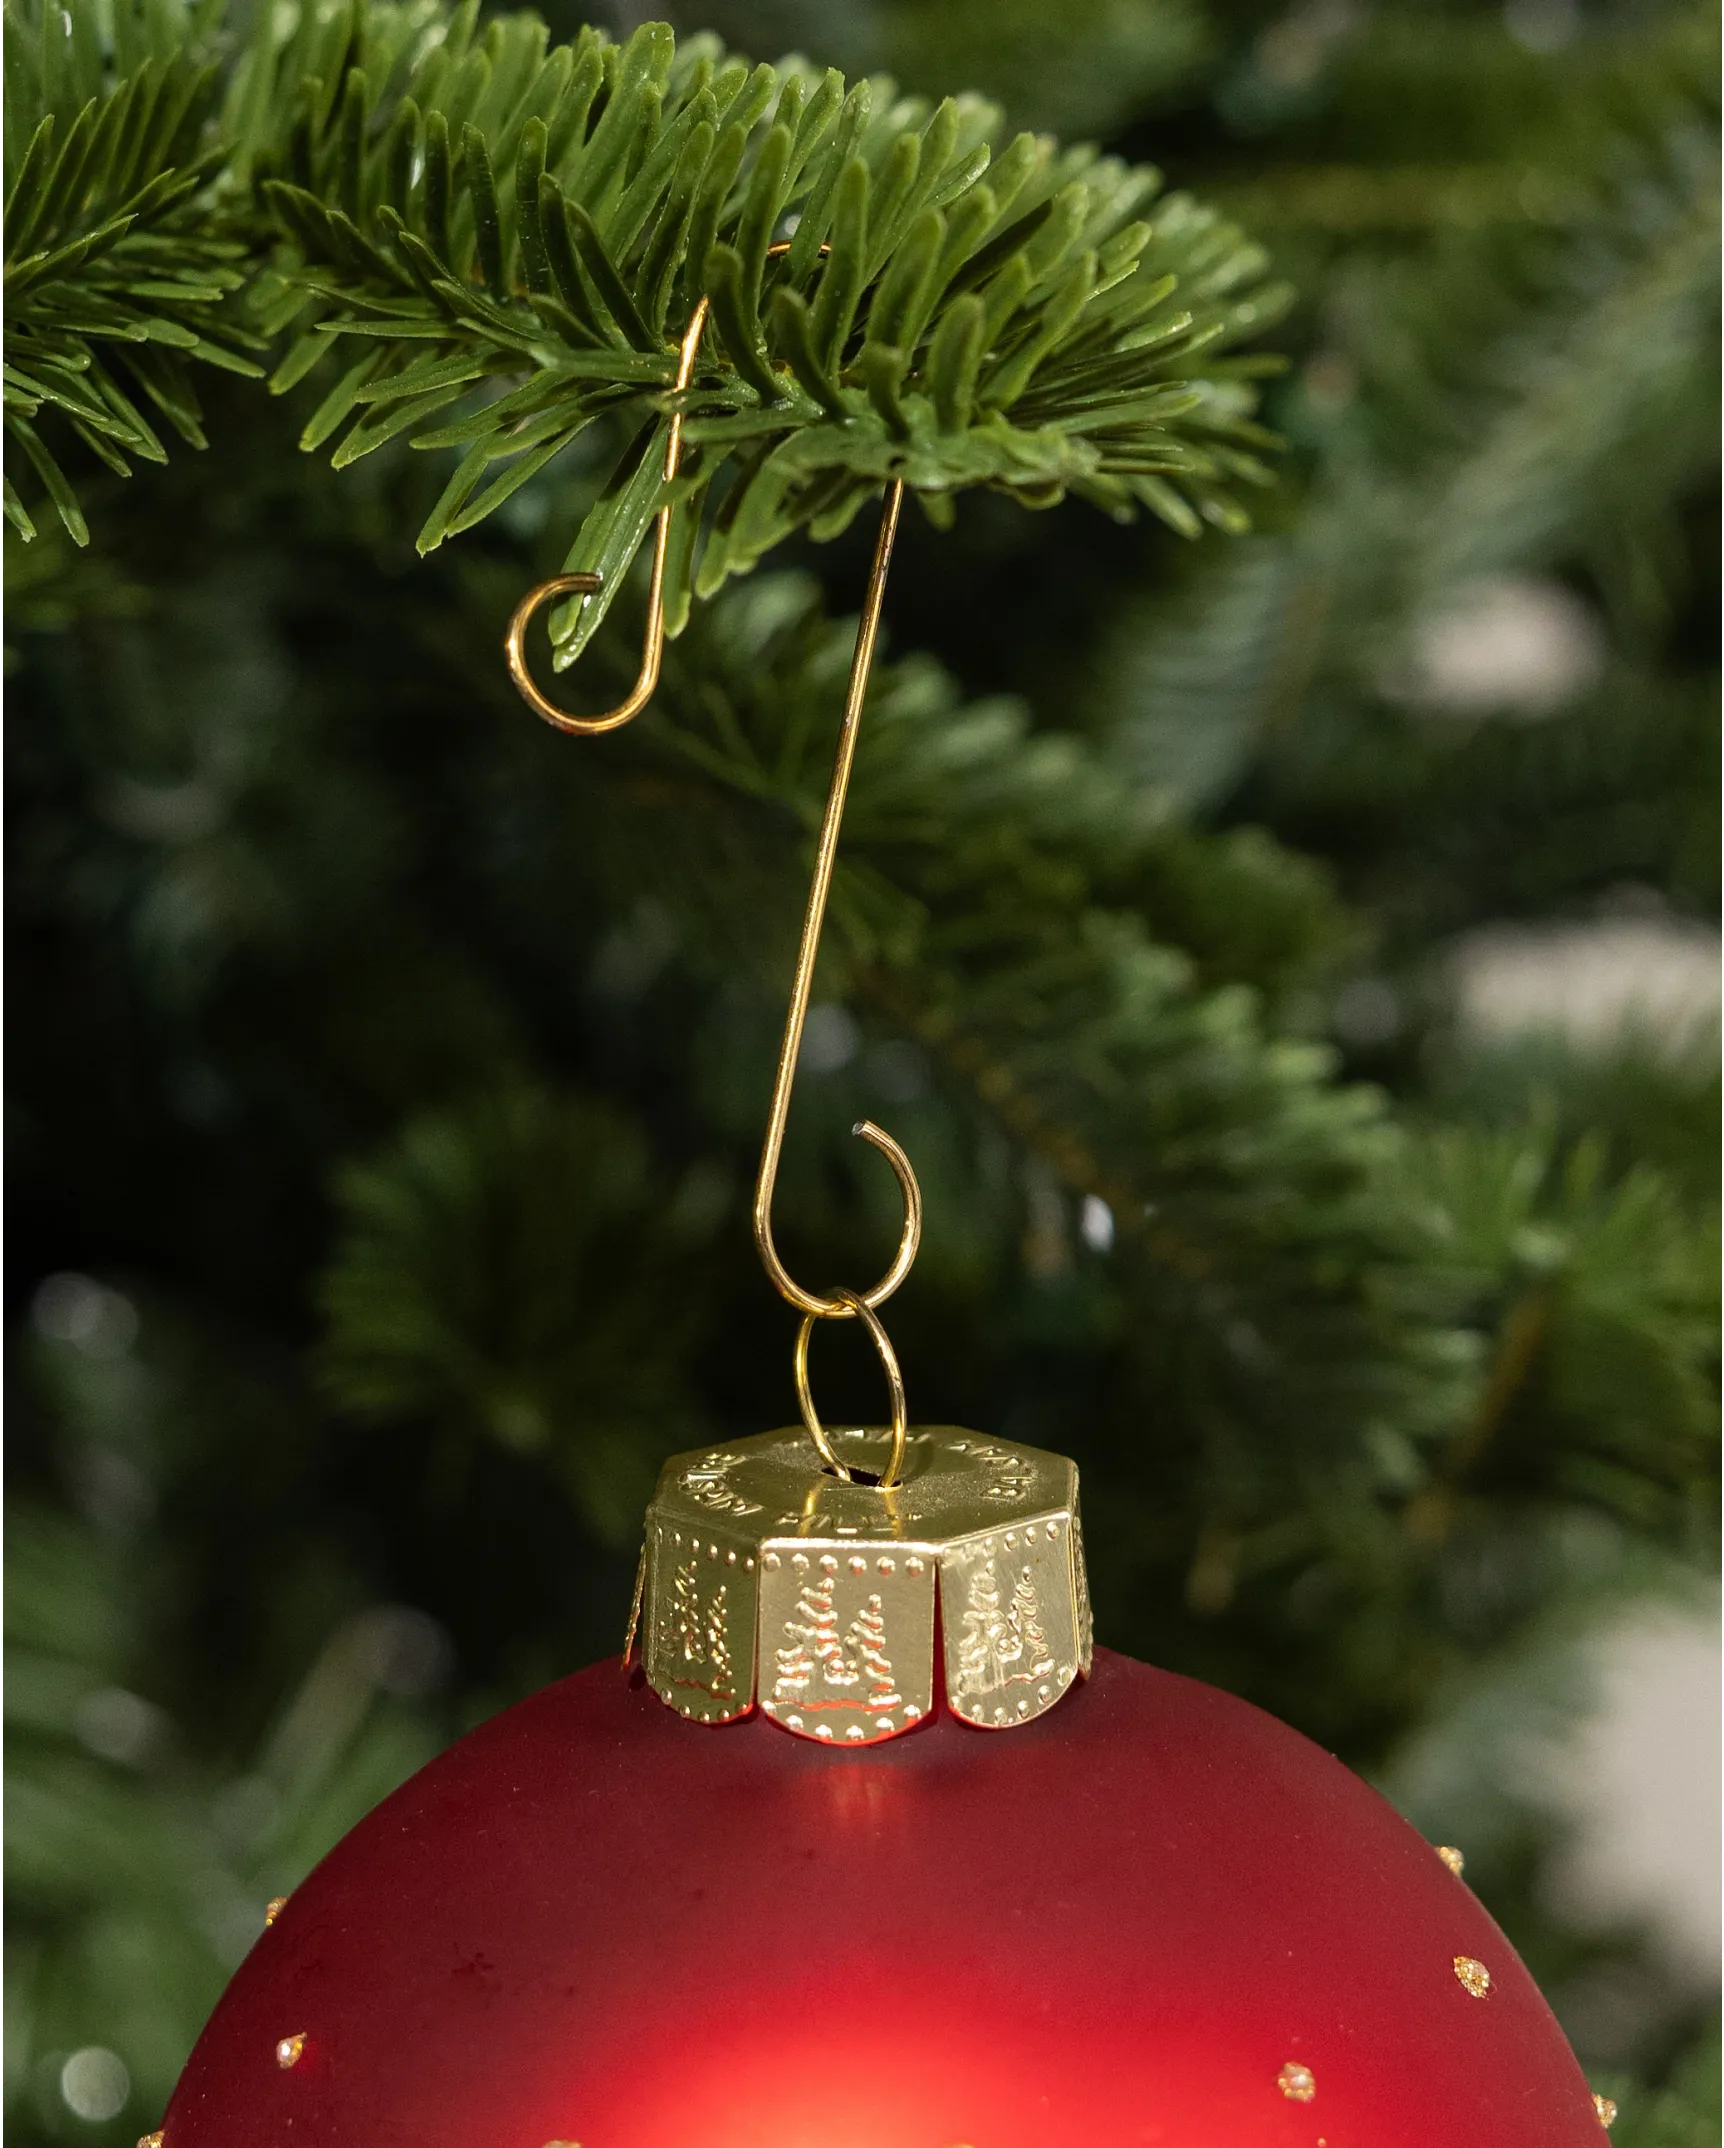 miniature ornament hooks